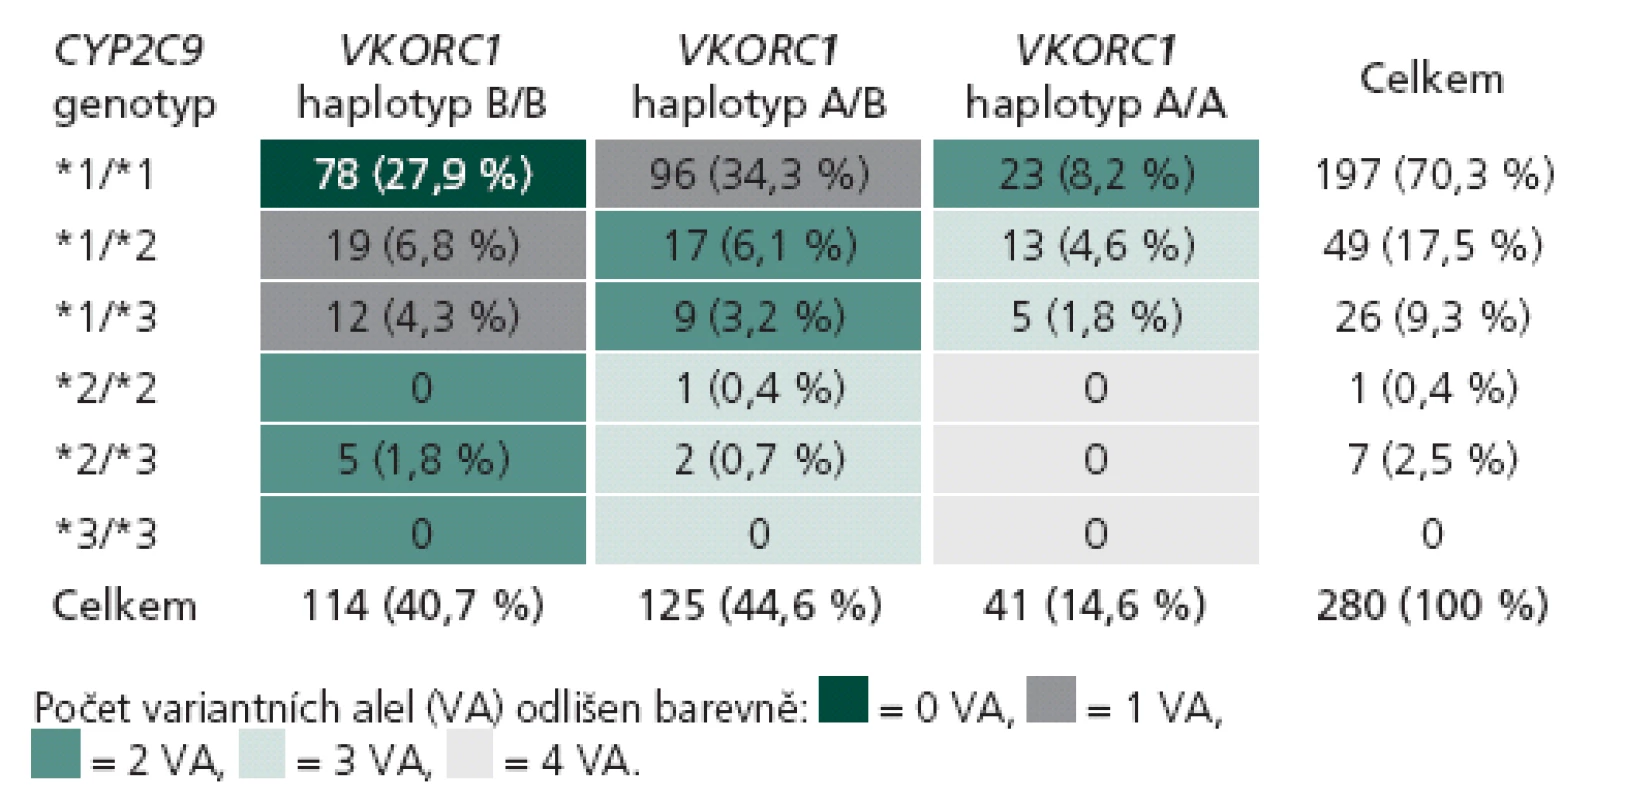 Počet pacientů s kompletními genetickými i klinickými daty v souboru pro porovnání farmakogenetických algoritmů podle jejich kombinací genotypů v genech CYP2C9 a VKORC1 (n = 280).